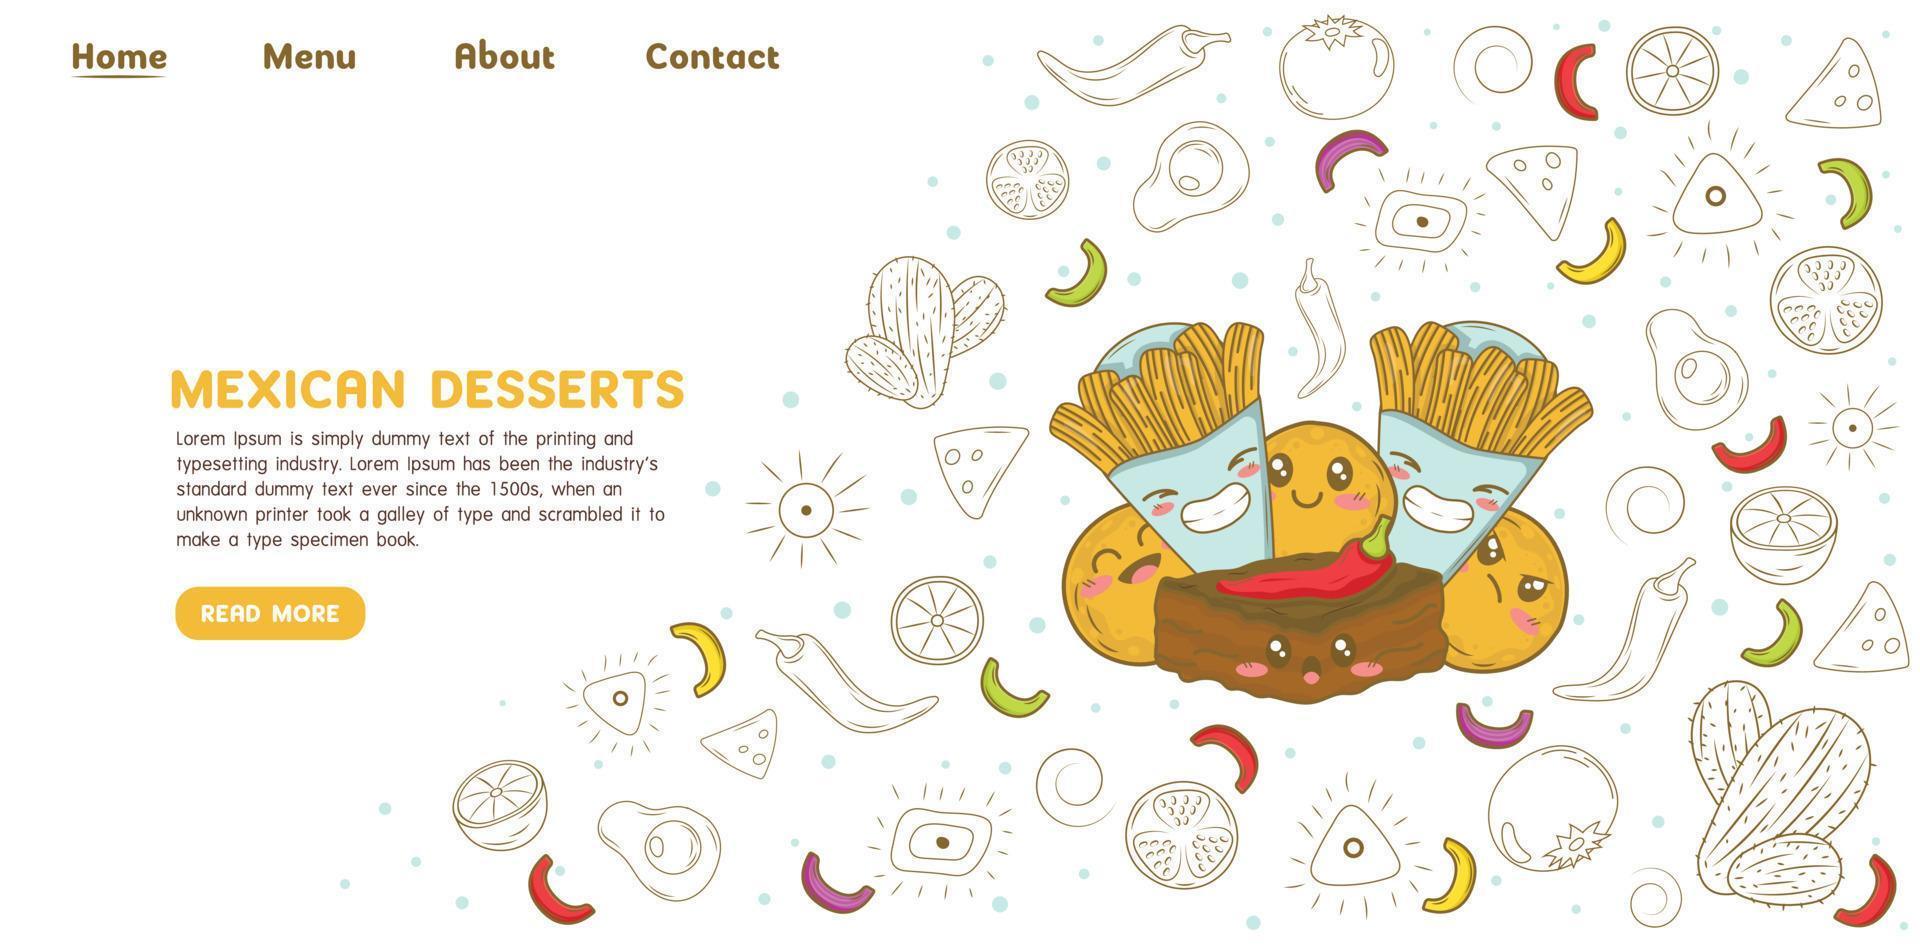 plantilla de sitio web de página de destino de postres mexicanos donut churros y chili brownie con elementos de dibujos animados de doodle vector